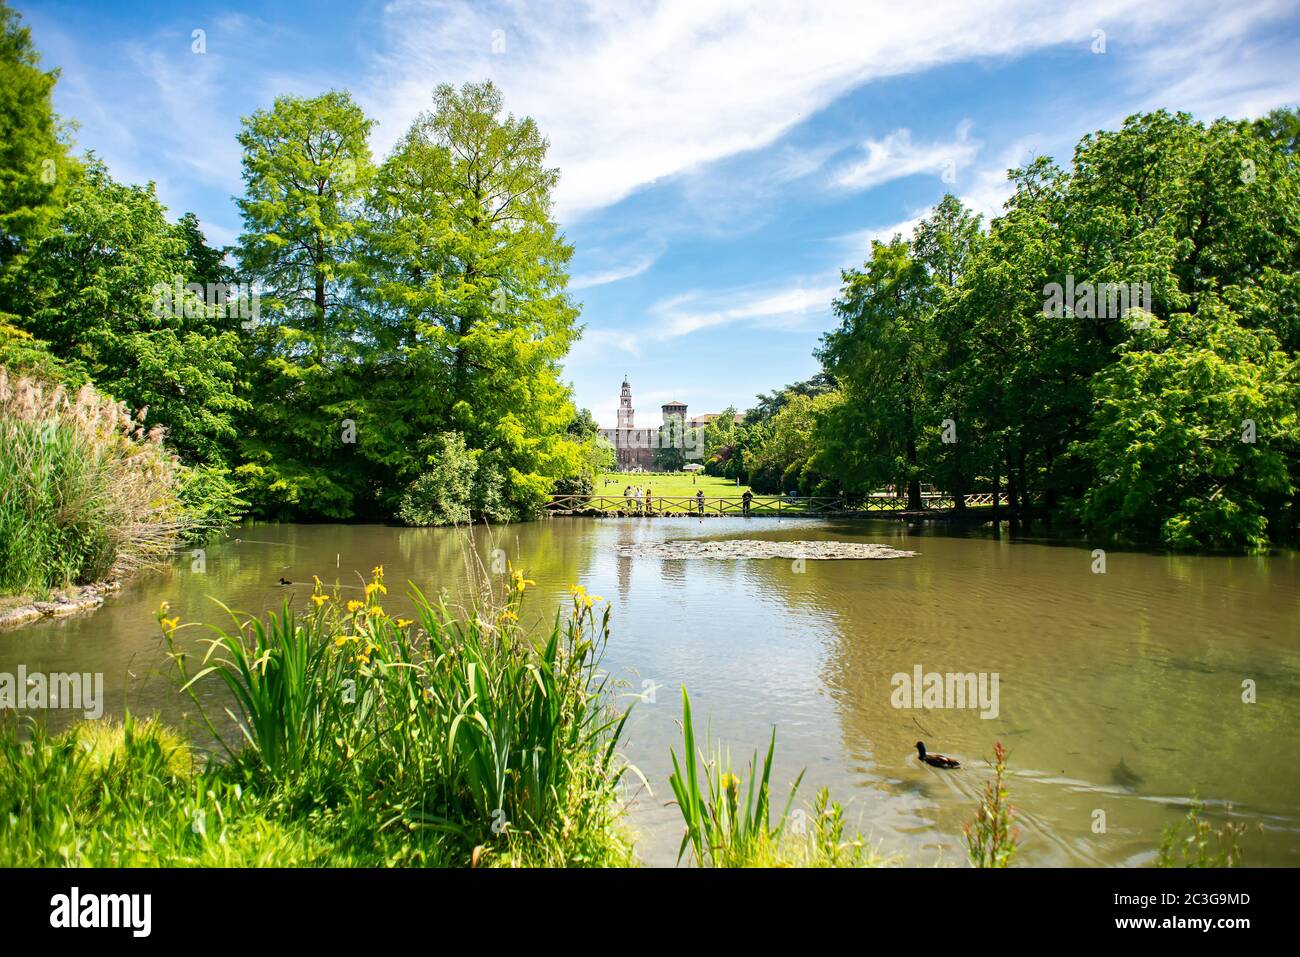 Mailand. Italien - 21. Mai 2019: Teich im Sempione Park (Parco Sempione) in Mailand, Italien. Castello Sforzesco auf dem Hintergrund. Stockfoto